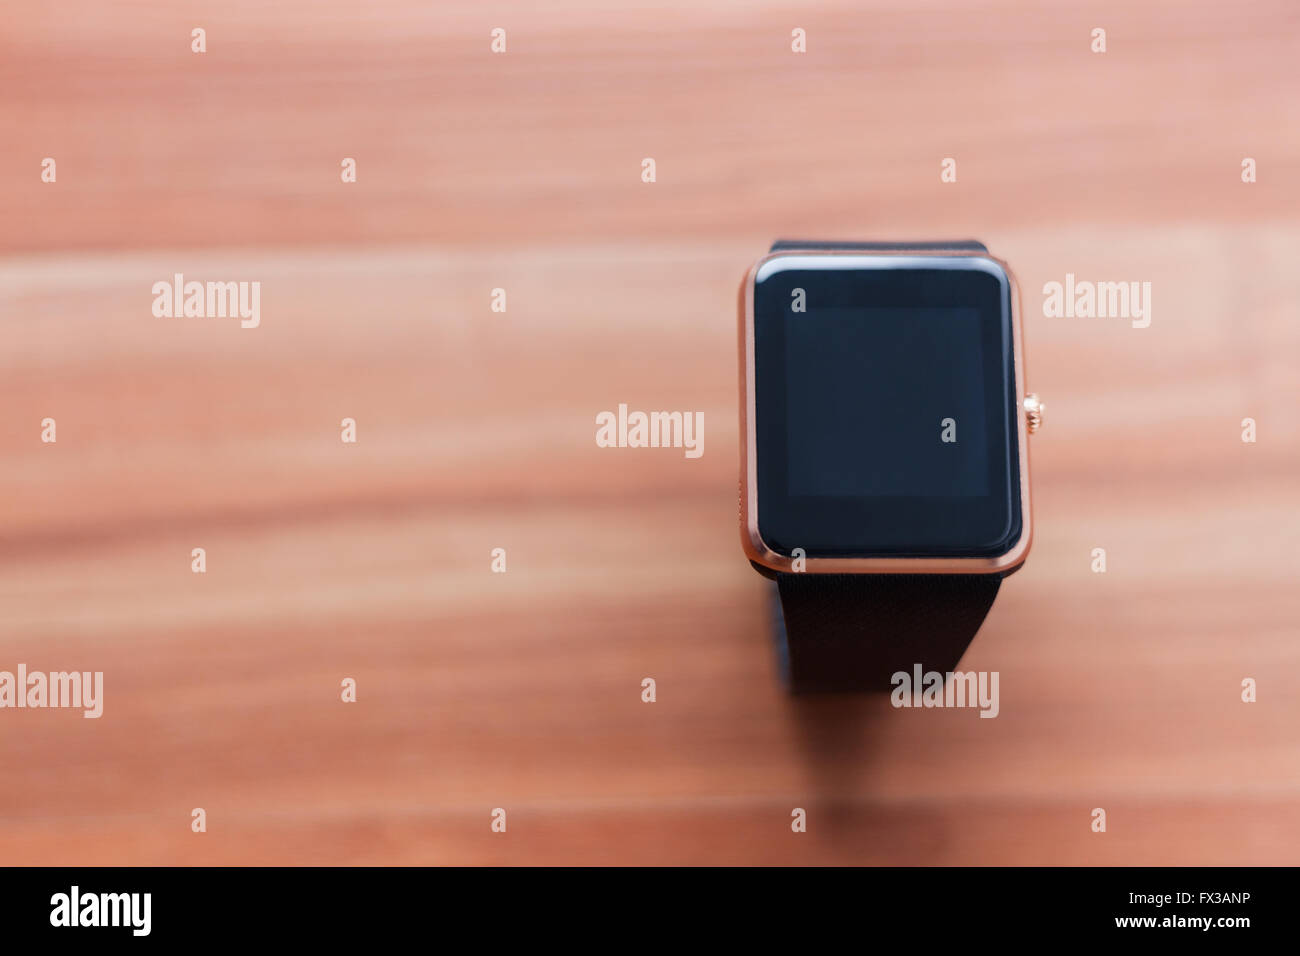 Reloj de pulsera inteligente puesta sobre el fondo de madera. Elegante nueva tecnología que le permite estar siempre conectado Foto de stock